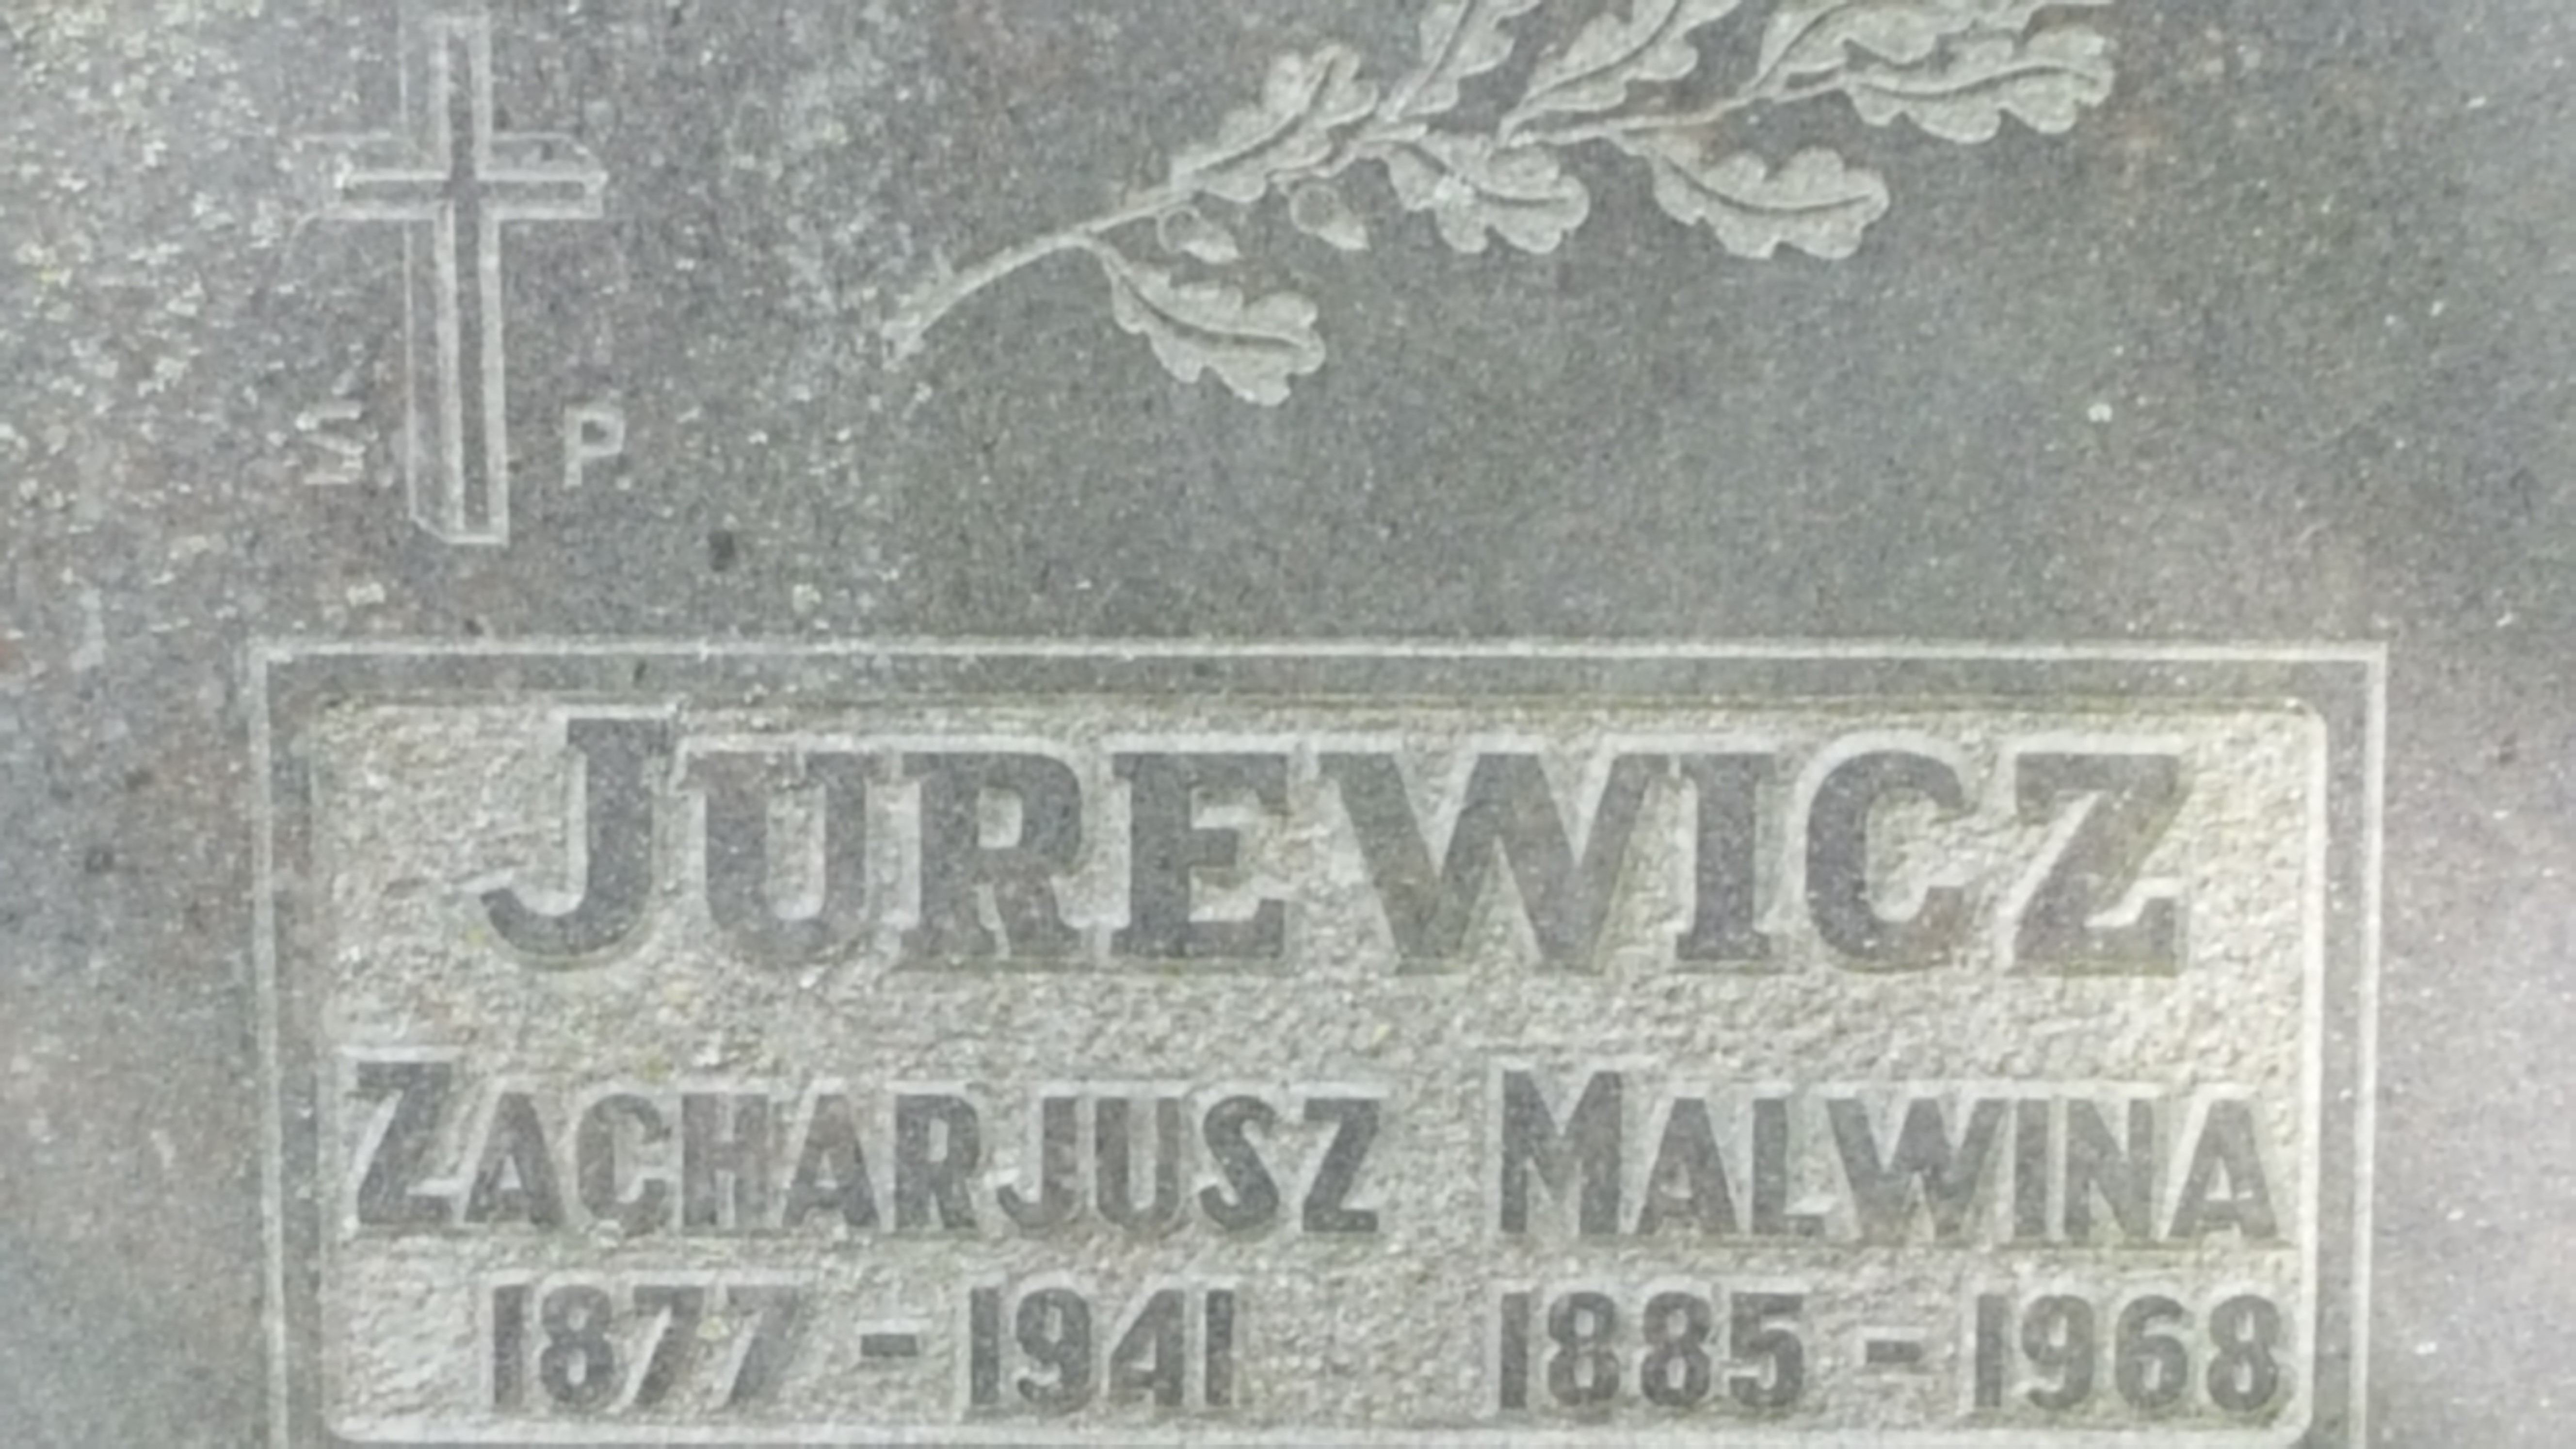 Napis z nagrobka Malwiny i Zacharjusza Jurewiczów, cmentarz św. Michała w Rydze, stan z 2021 r.